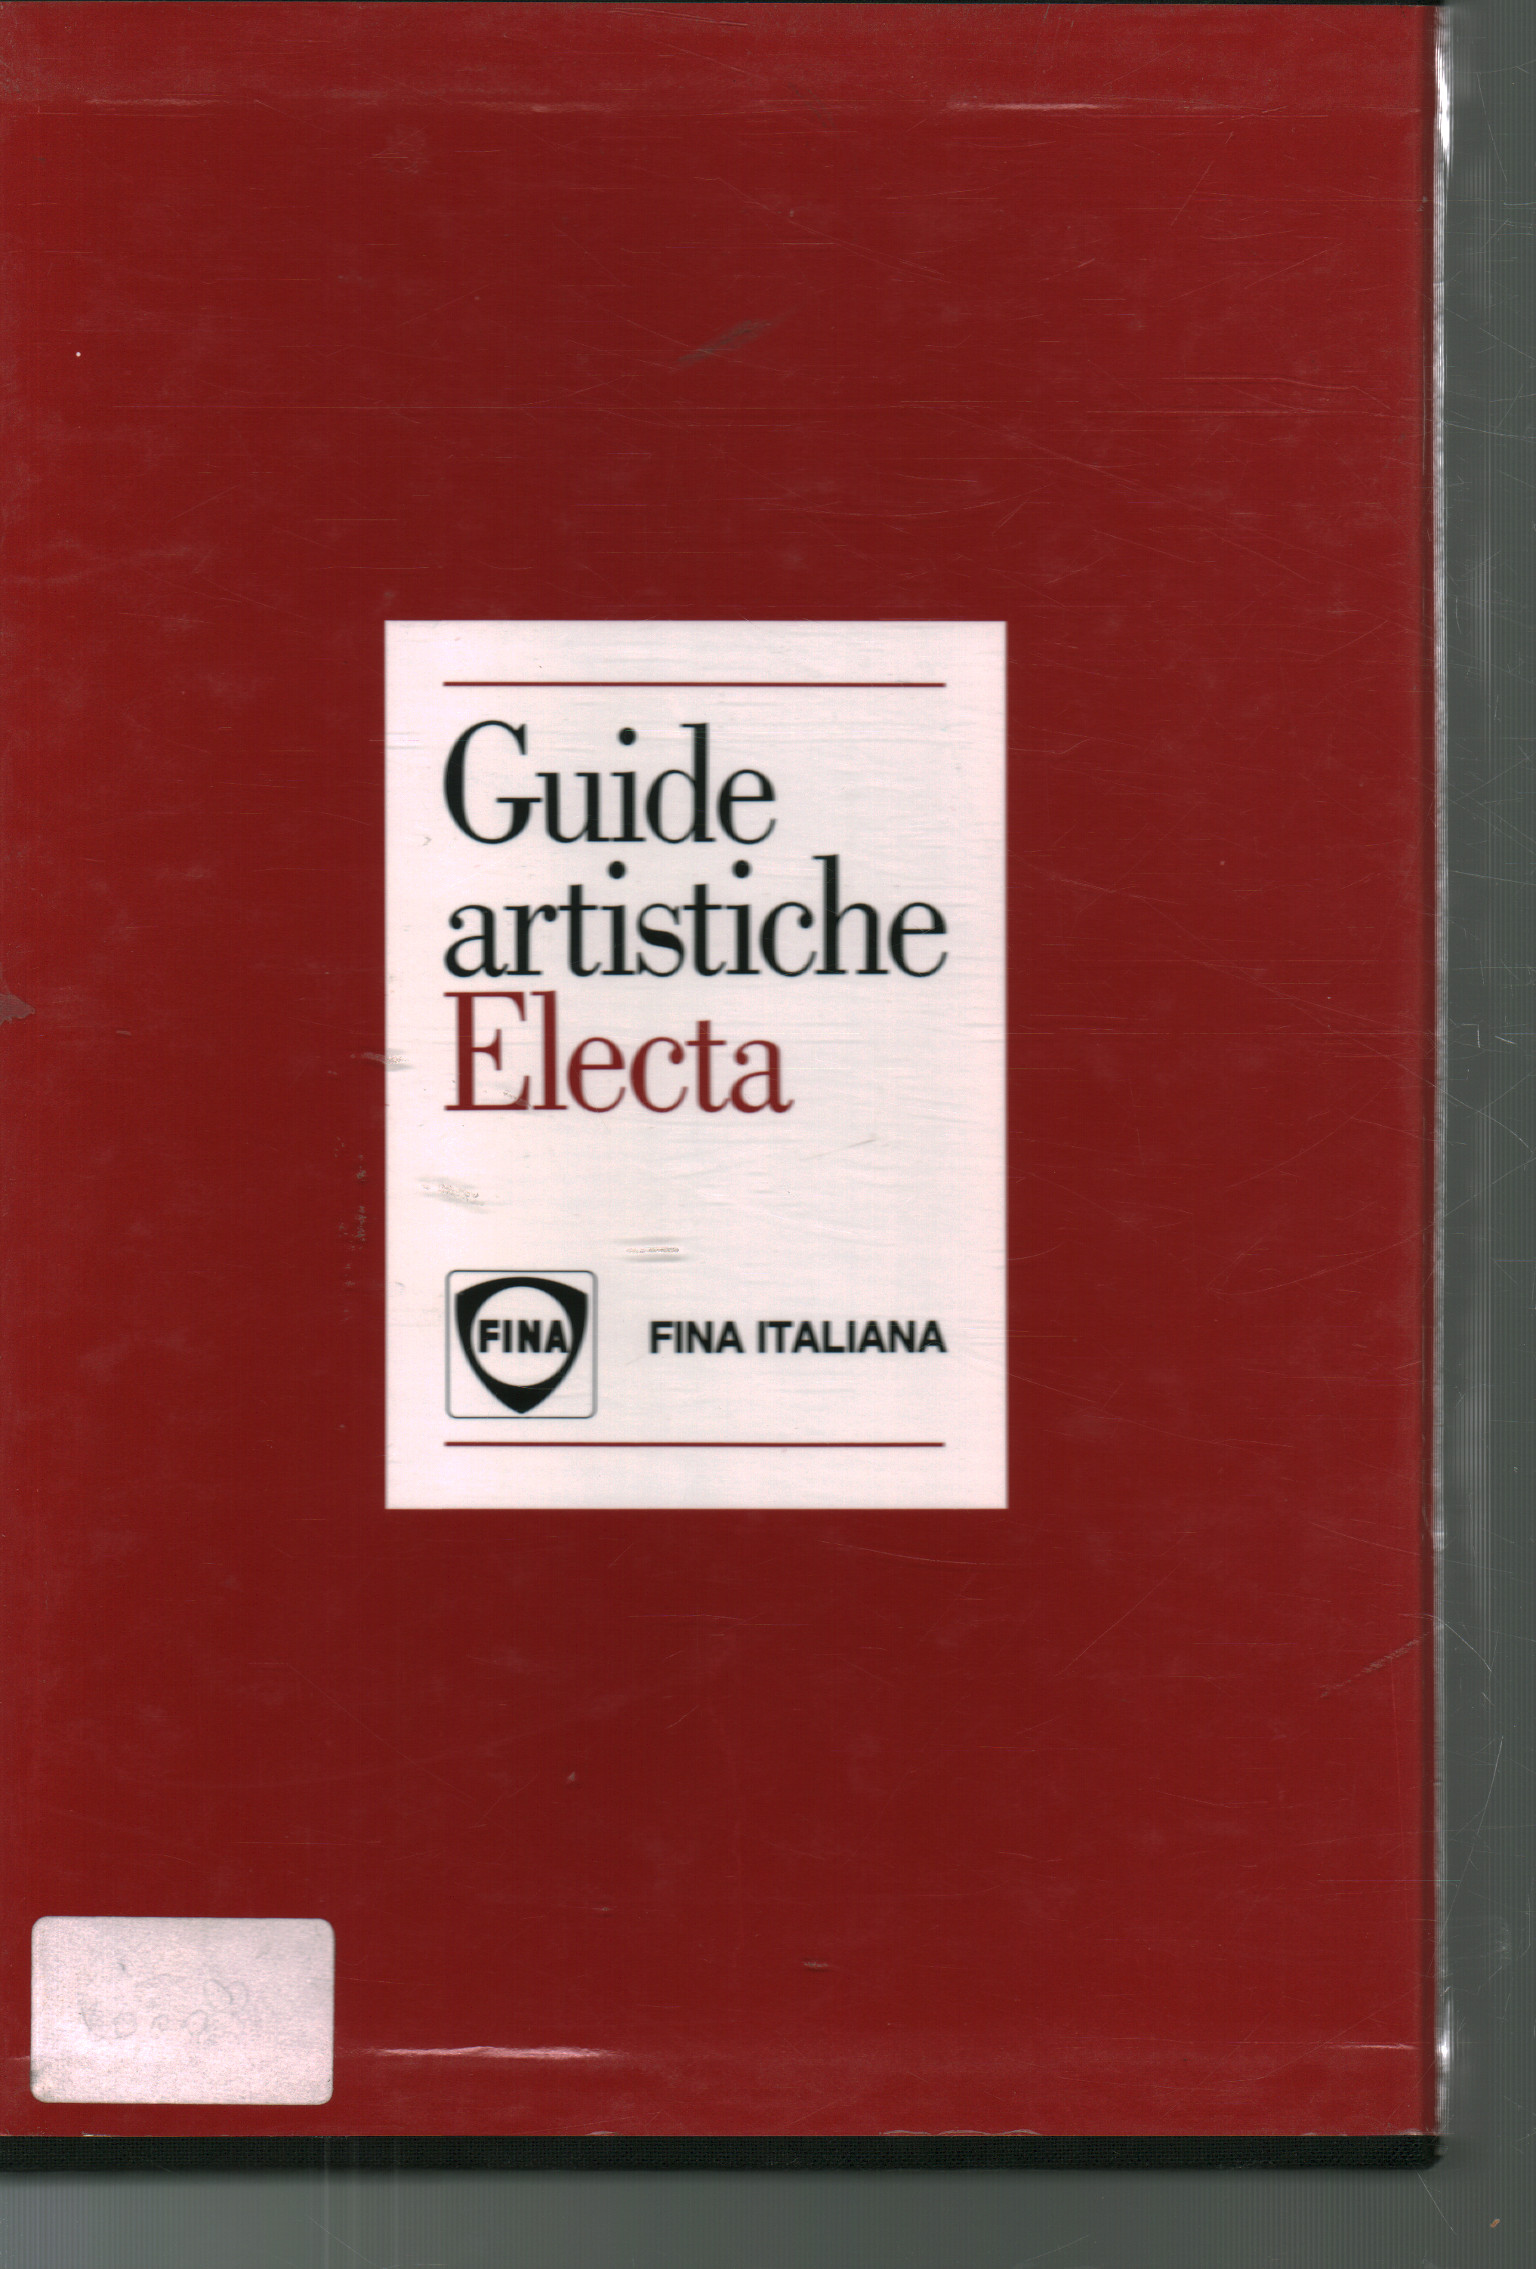 Guide artistiche Electa 3 volumes, AA.VV.